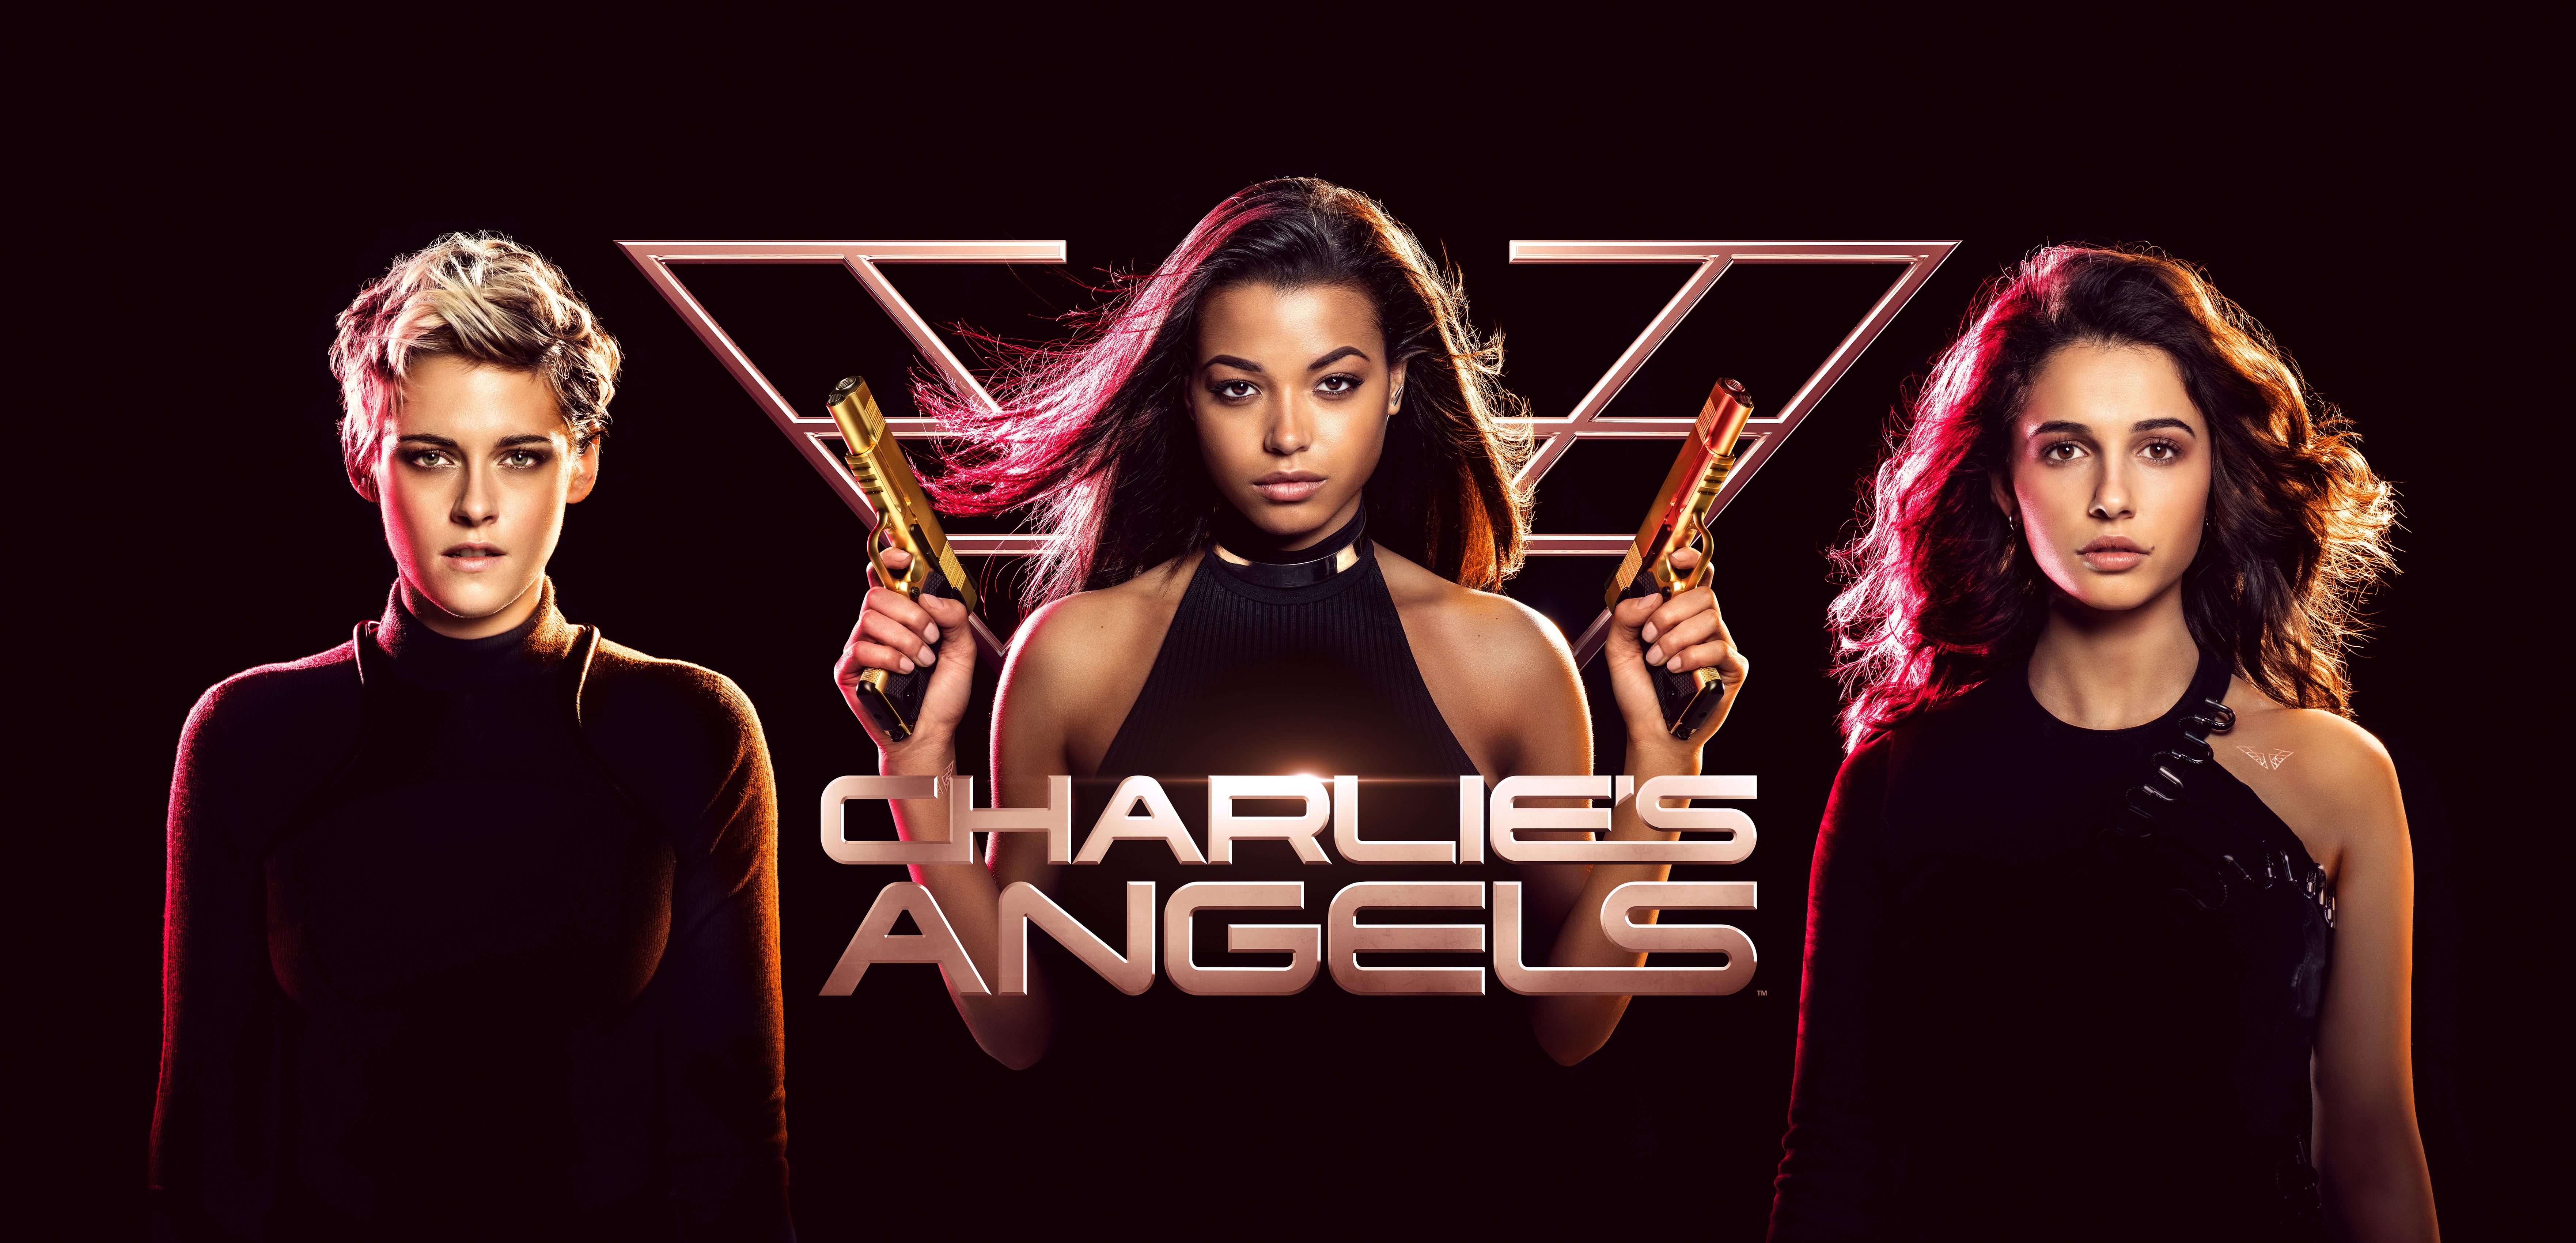 Charlies Angels 2019 8k, HD Movies, 4k Wallpaper, Image